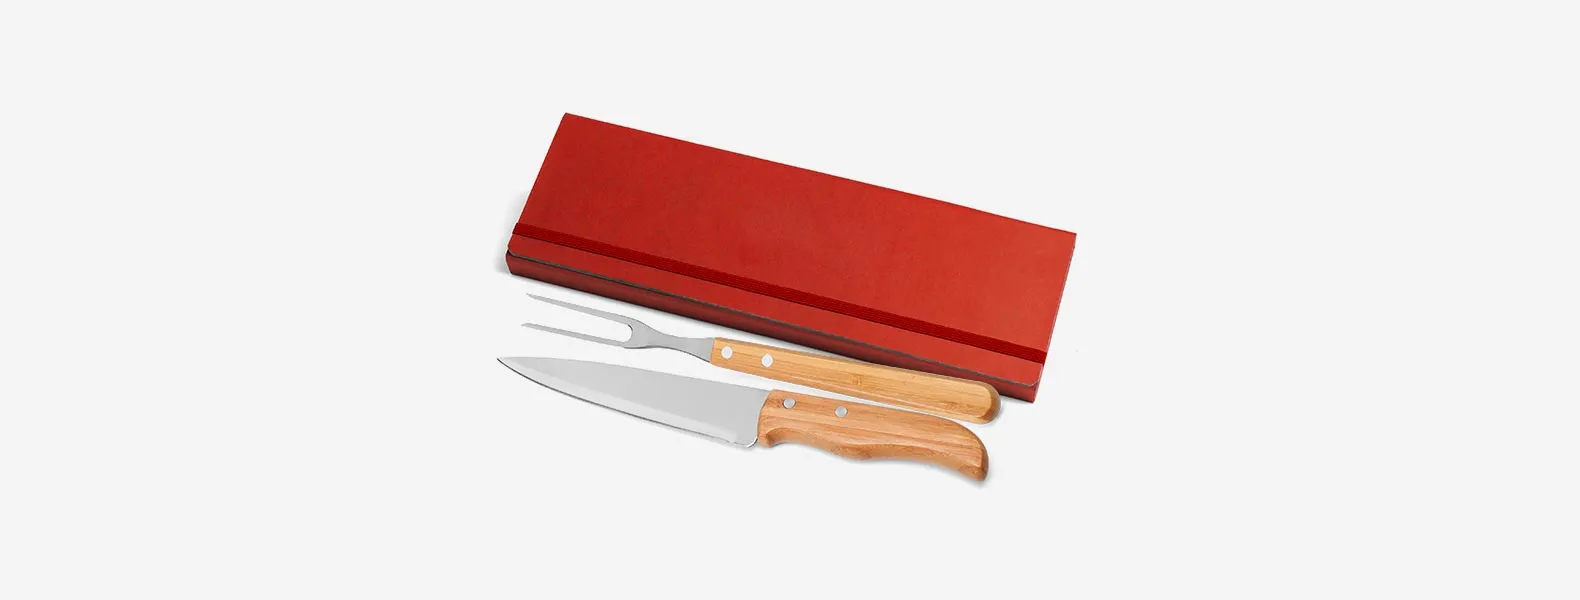 Conjunto composto por uma faca 7” e um garfo trinchante, ambos com cabos em bambu e lâminas em aço Inox com rebites resistentes. Estão organizados em uma pasta vermelha com elásticos.